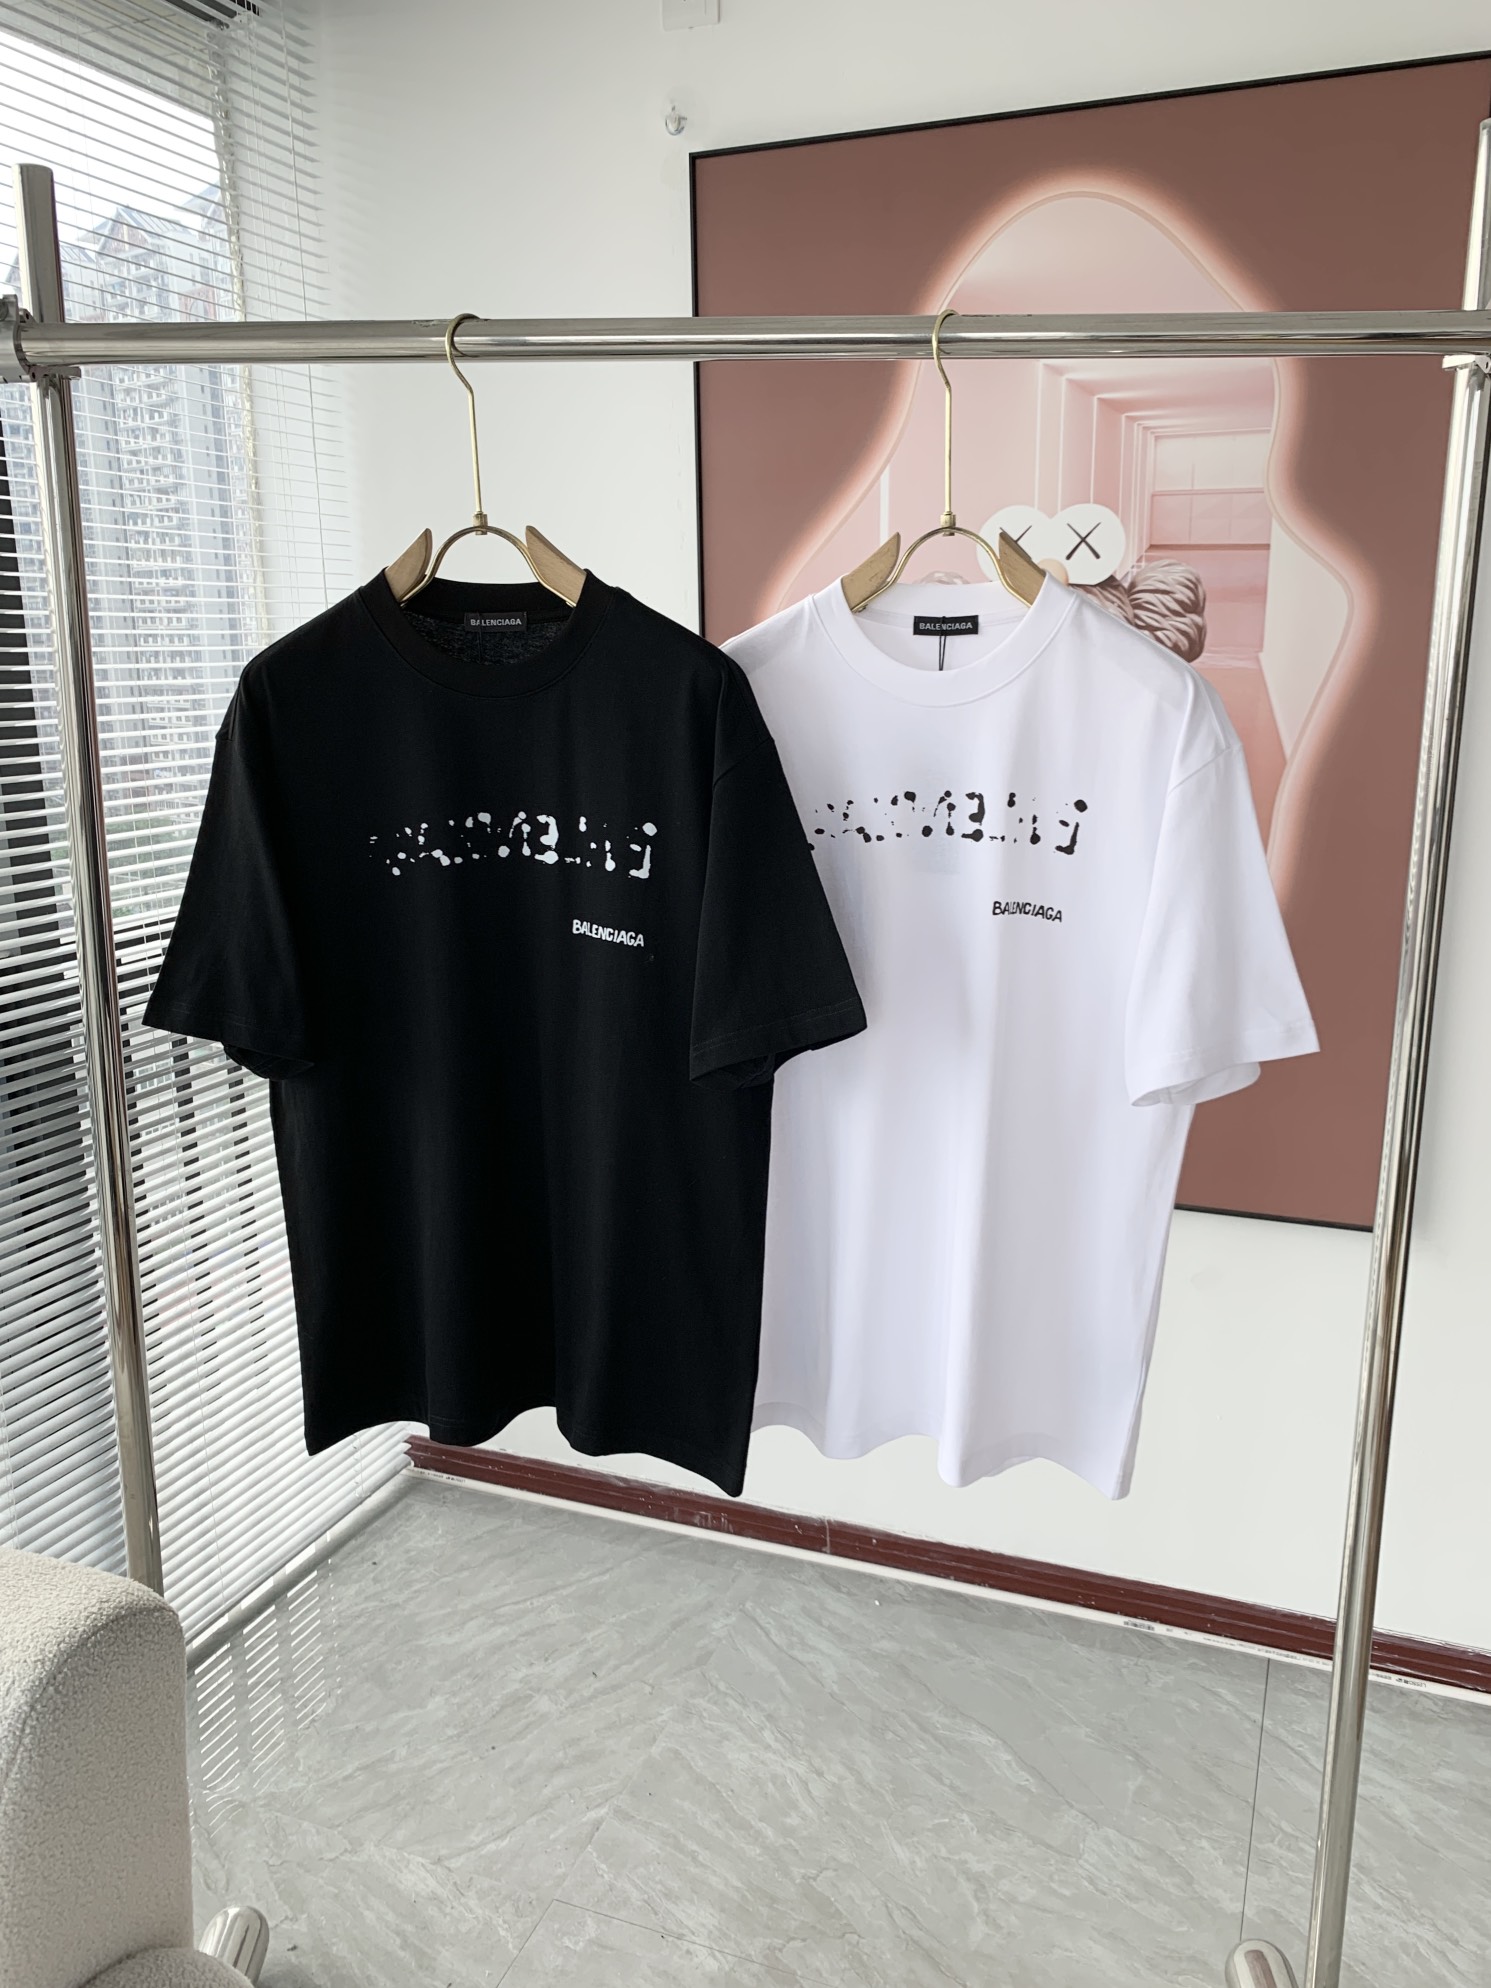 Balenciaga Clothing T-Shirt Unisex Cotton Spring/Summer Collection Short Sleeve